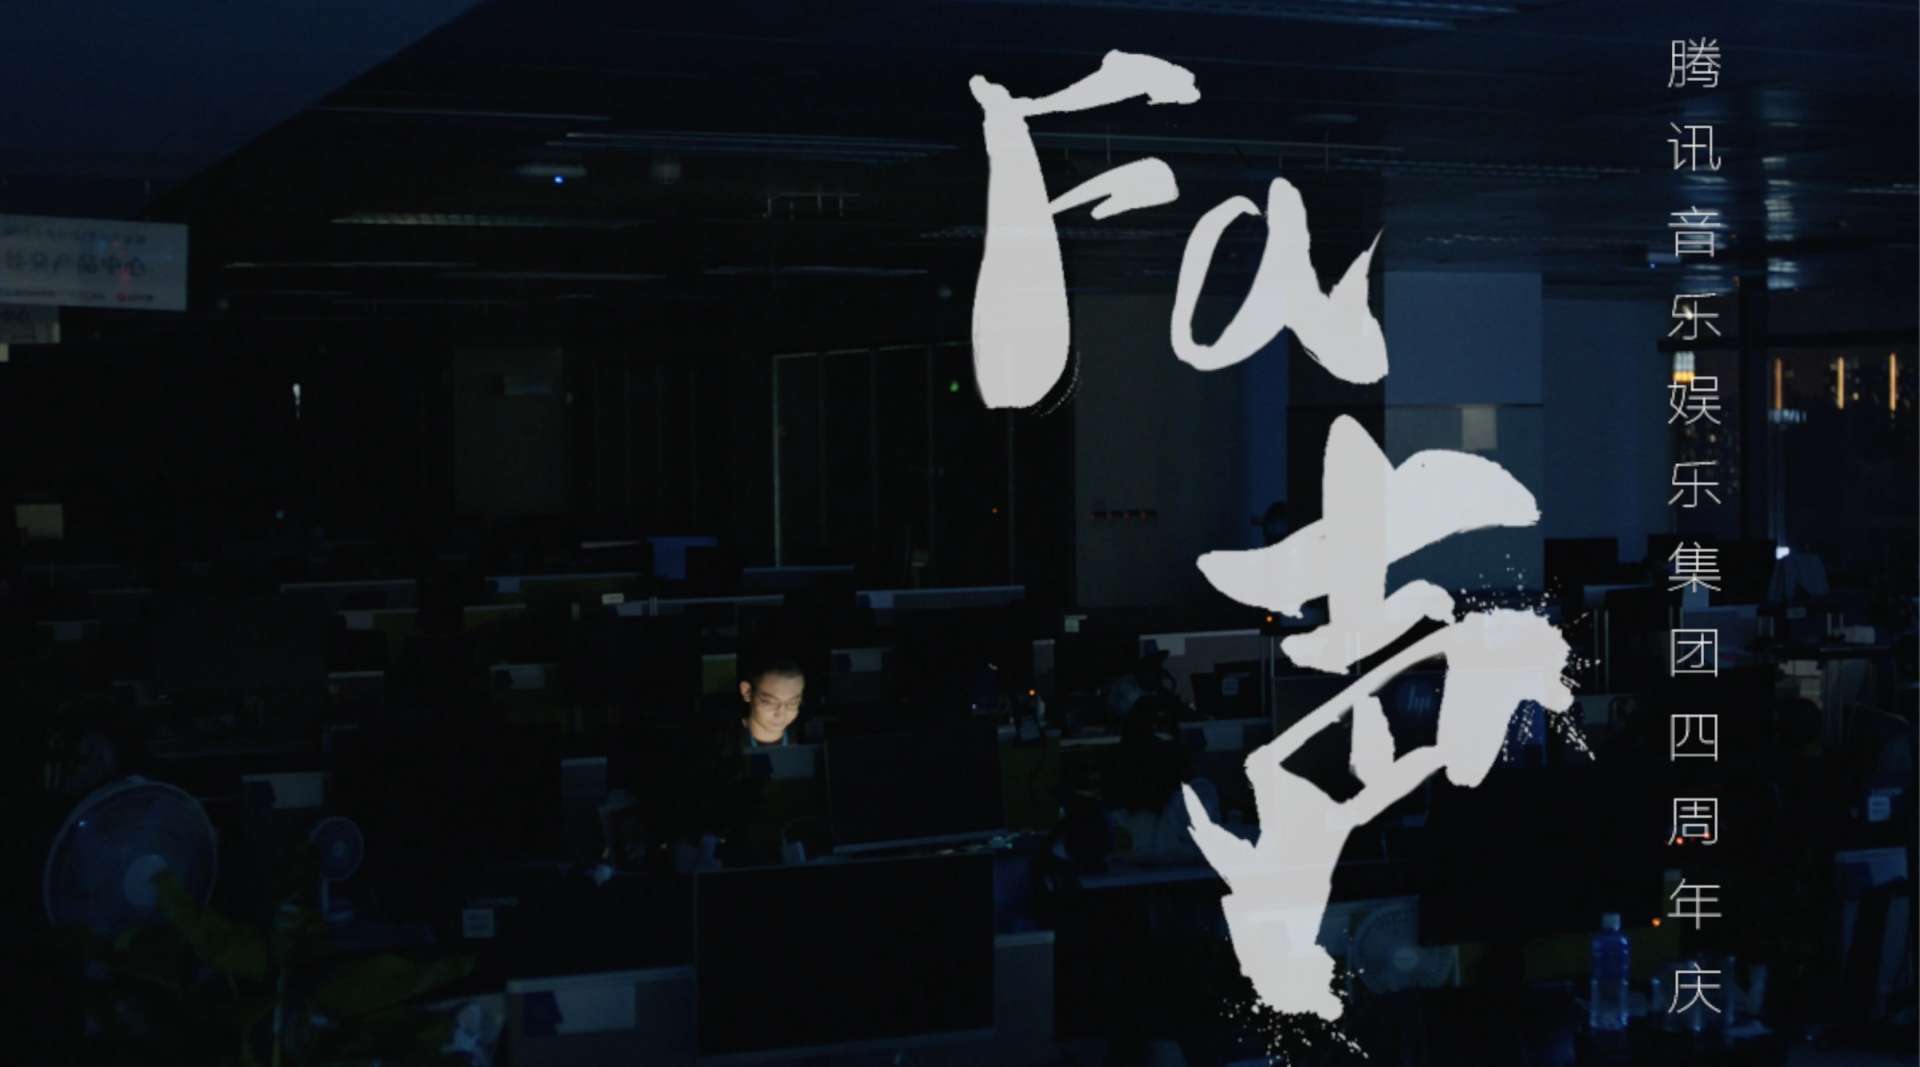 《Fa声》——腾讯音乐四周年宣传片